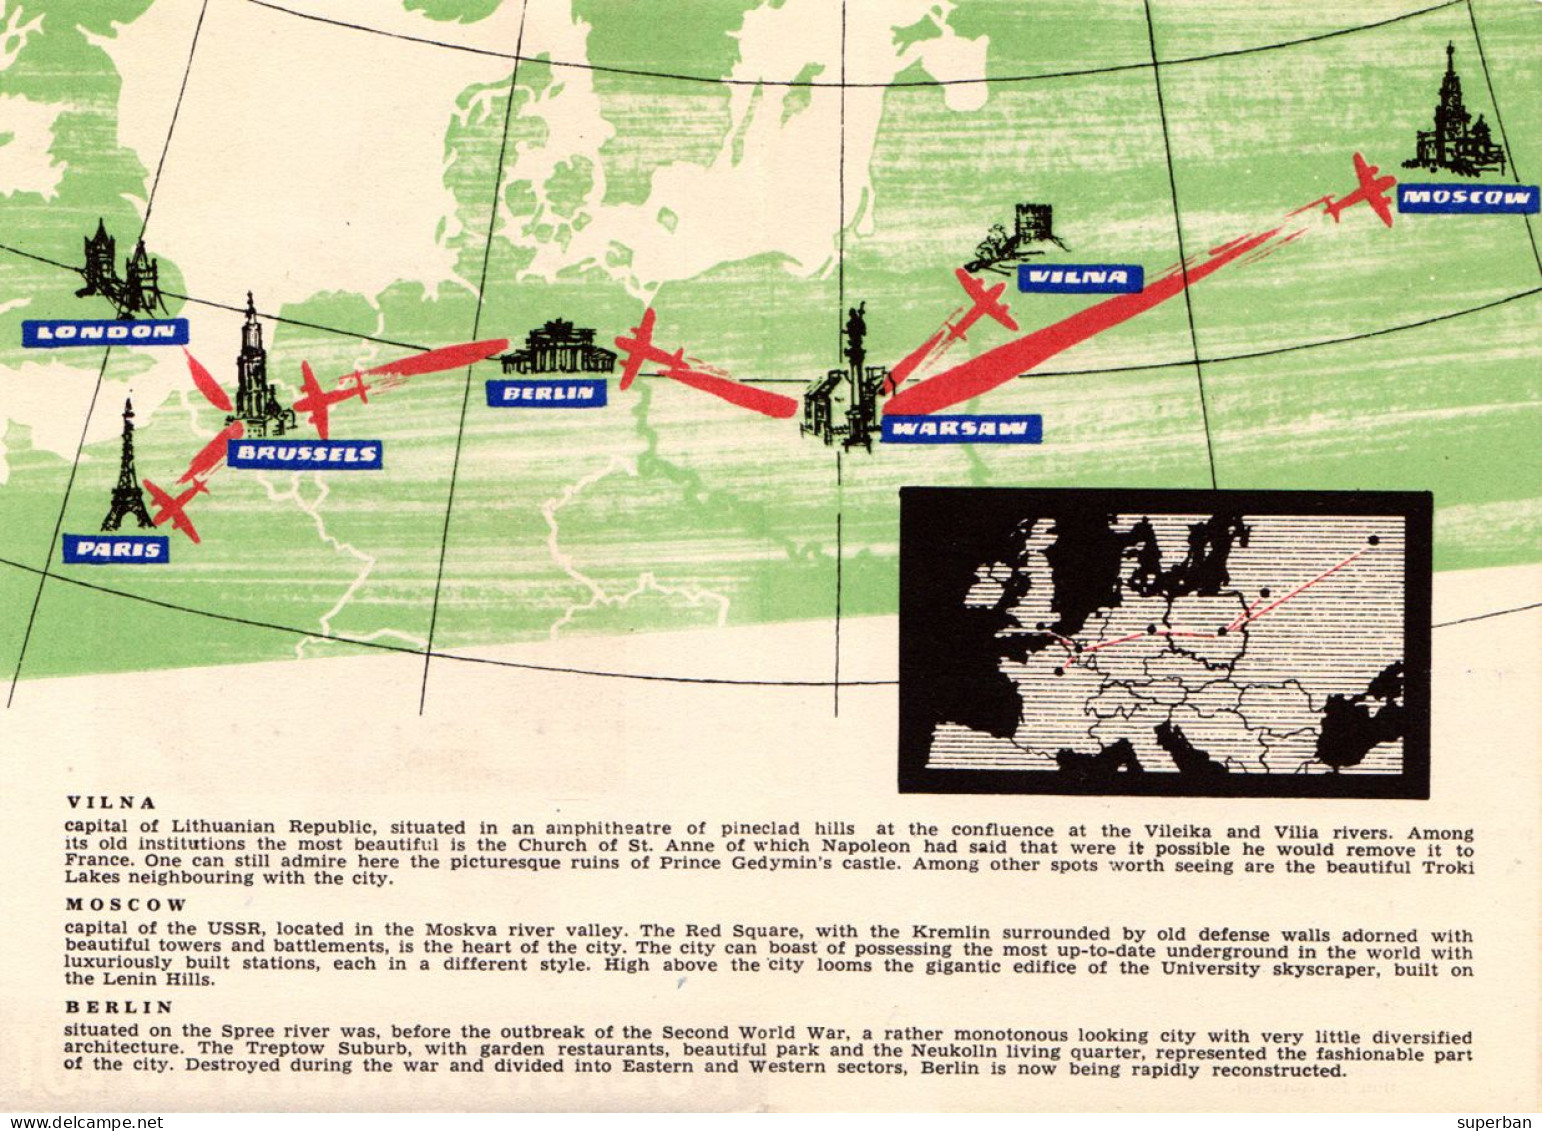 AVIATION CIVILE : ROUTE MAP / CARTE De ROUTE : POLISH AIRLINES LOT / ADVERTISING LEAFLET / DÉPLIANT ~ 1955 - '65 (an604) - 1946-....: Ere Moderne